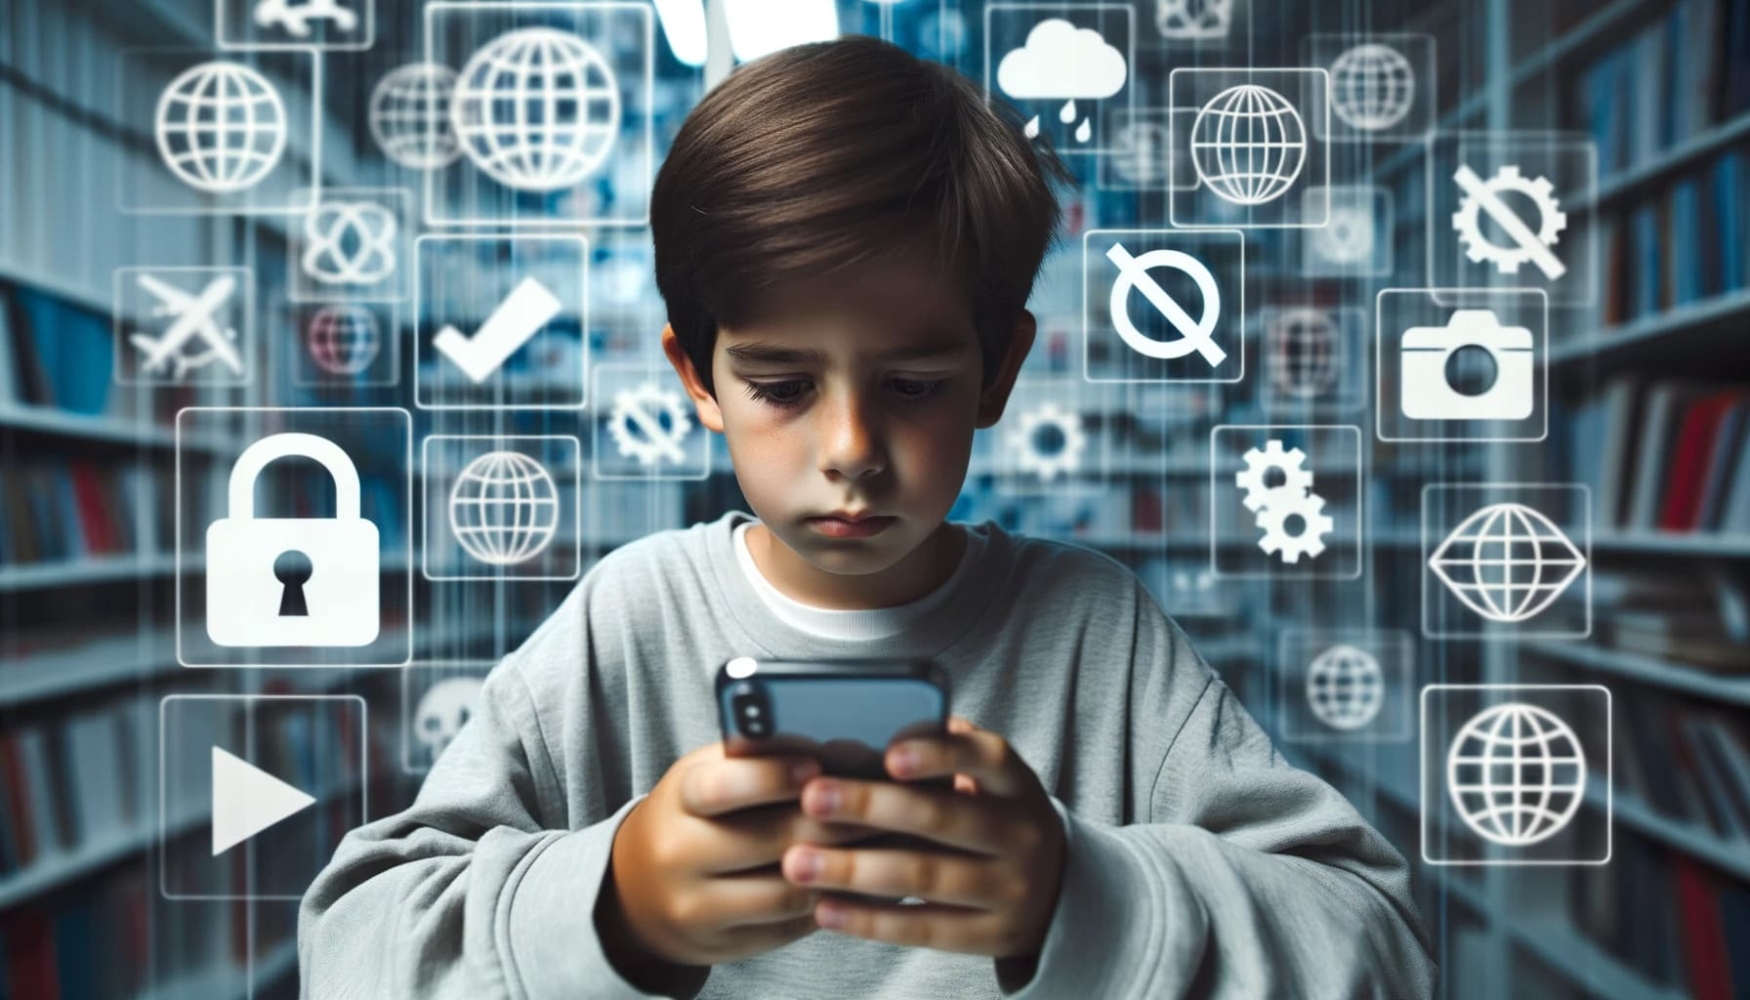 Photo d'un jeune garçon regardant attentivement un iPhone qu'il tient dans ses mains. Derrière lui, un mur numérique translucide affiche différents logos de sites web, dont certains sont barrés, ce qui indique qu'ils sont bloqués.